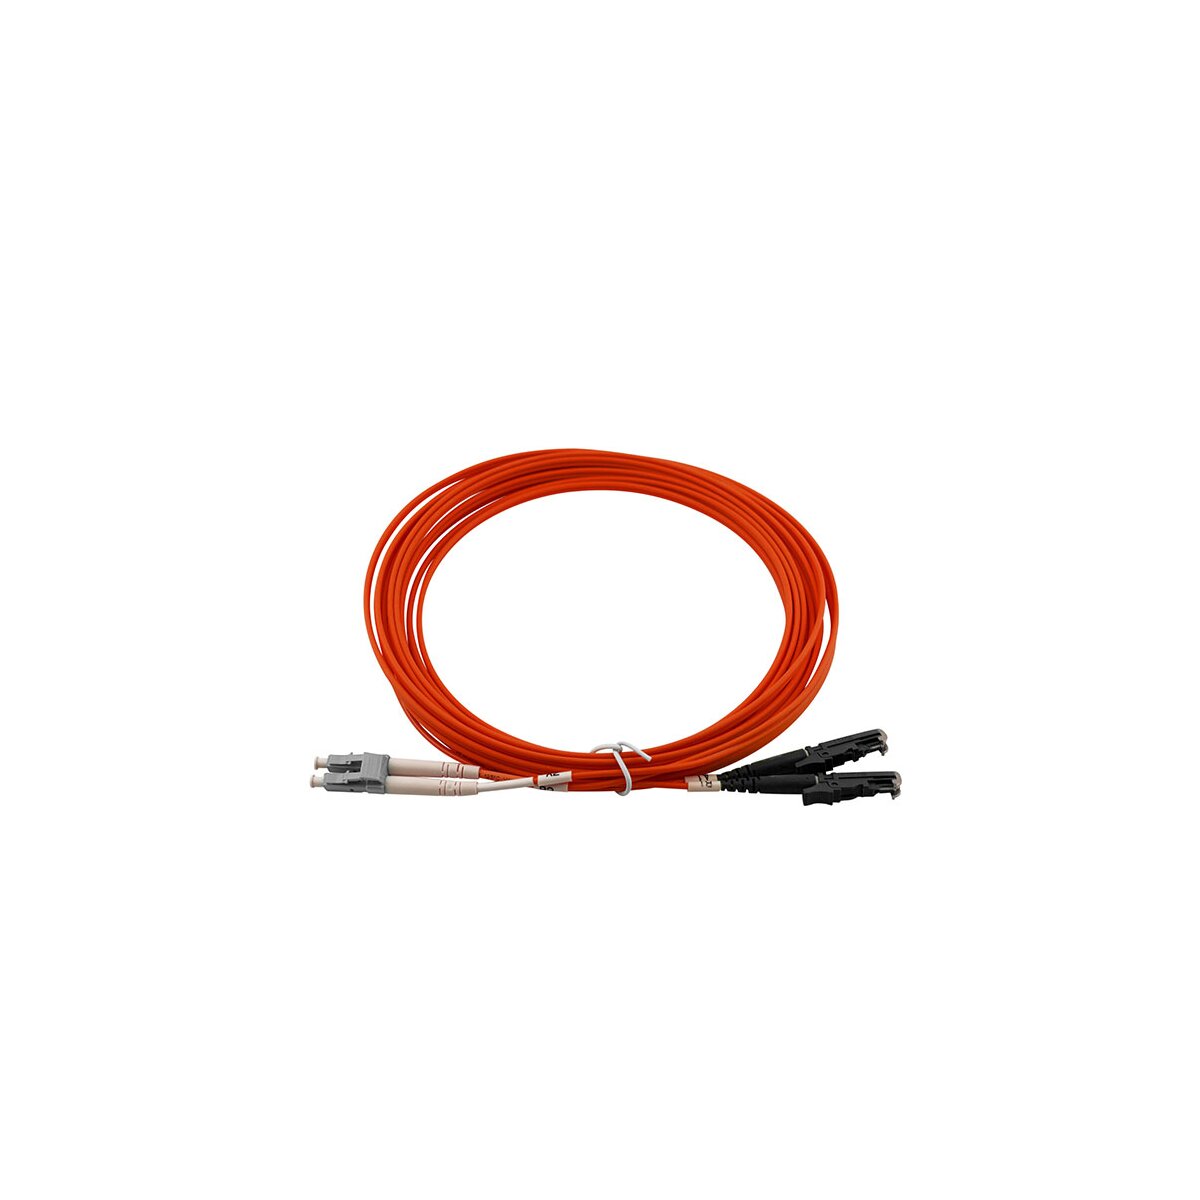 Kabel & Adapter kaufen Sie günstig im IT Online Shop OCTO24 | Stromversorgungskabel